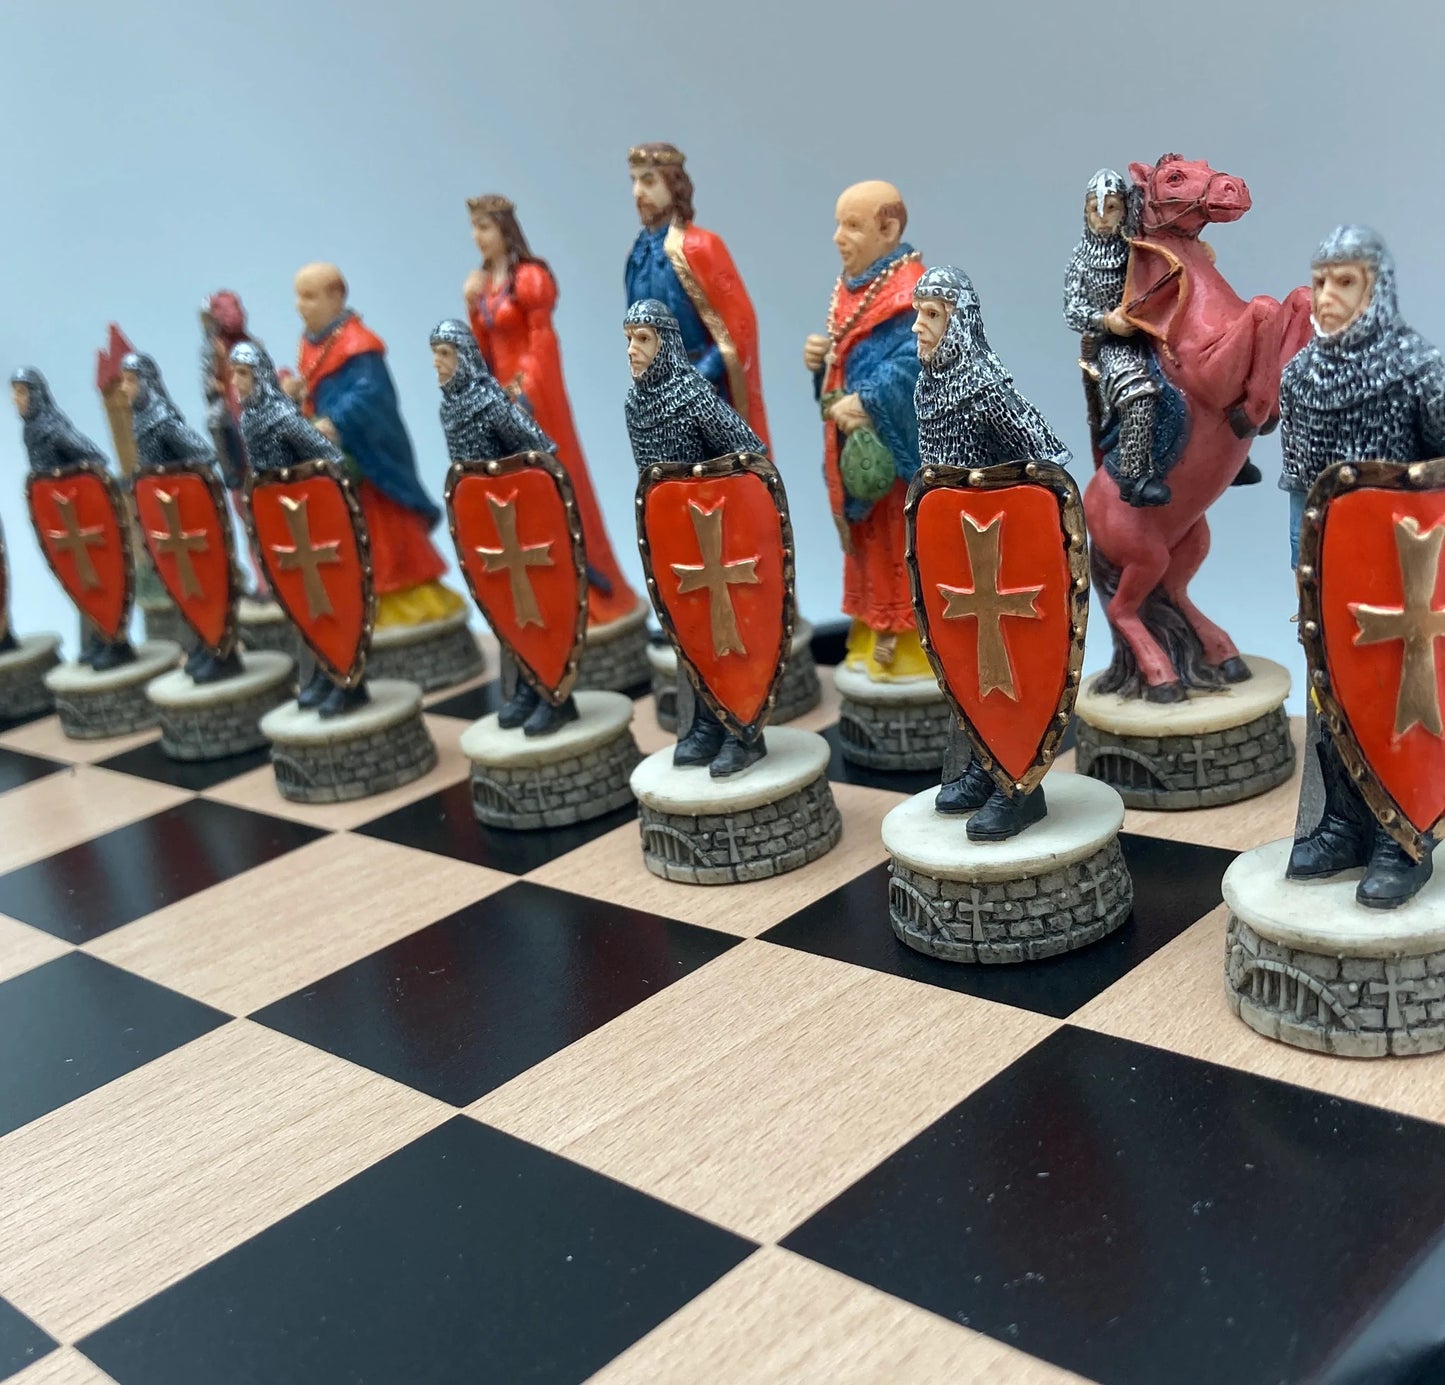 Robin Hood Chessmen on Black/Maple Chest Chess Set